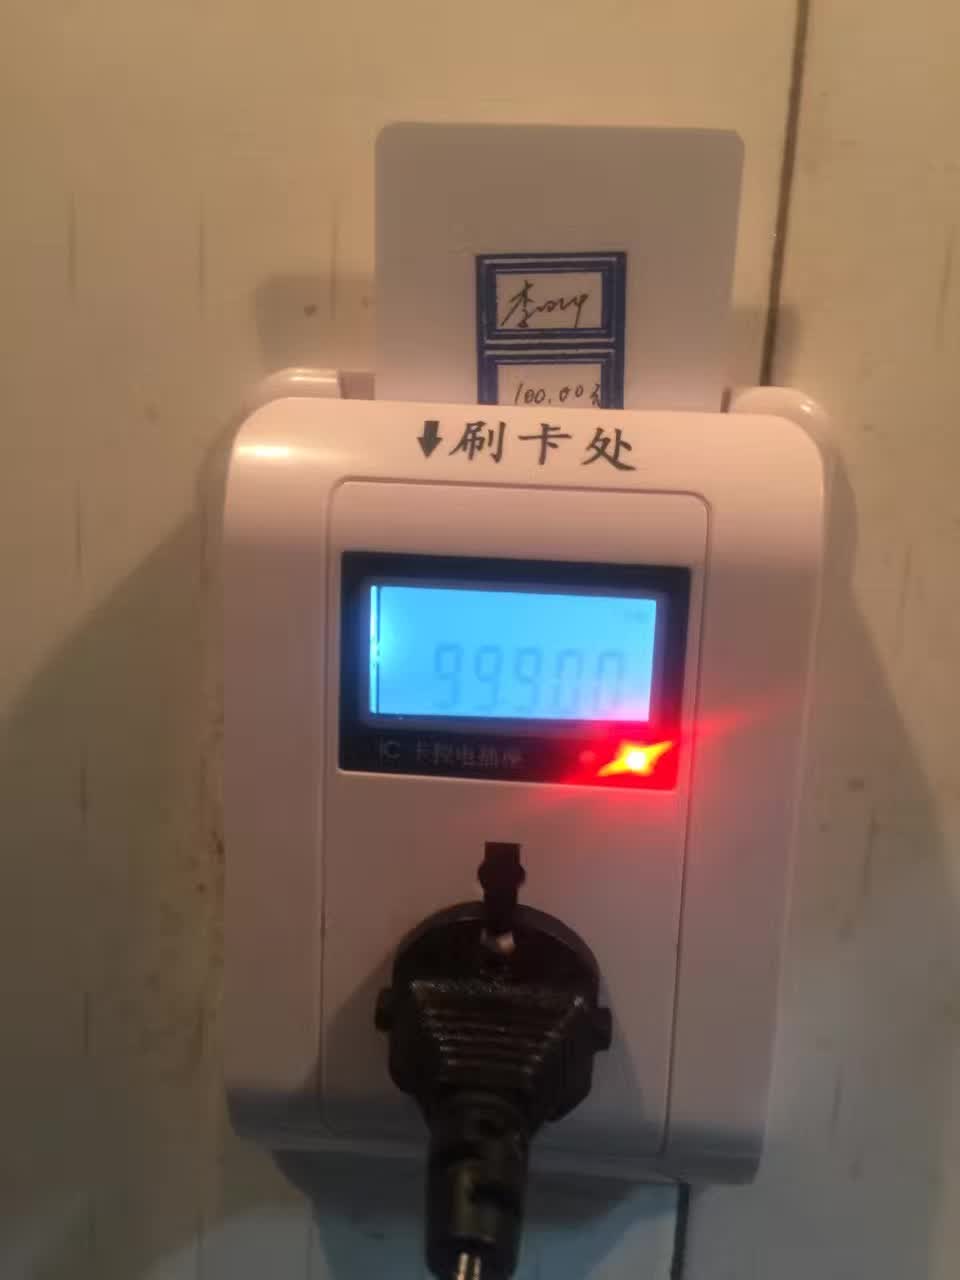 东城控电控水寝室空调电灯智能卡控电计时收费预防火灾